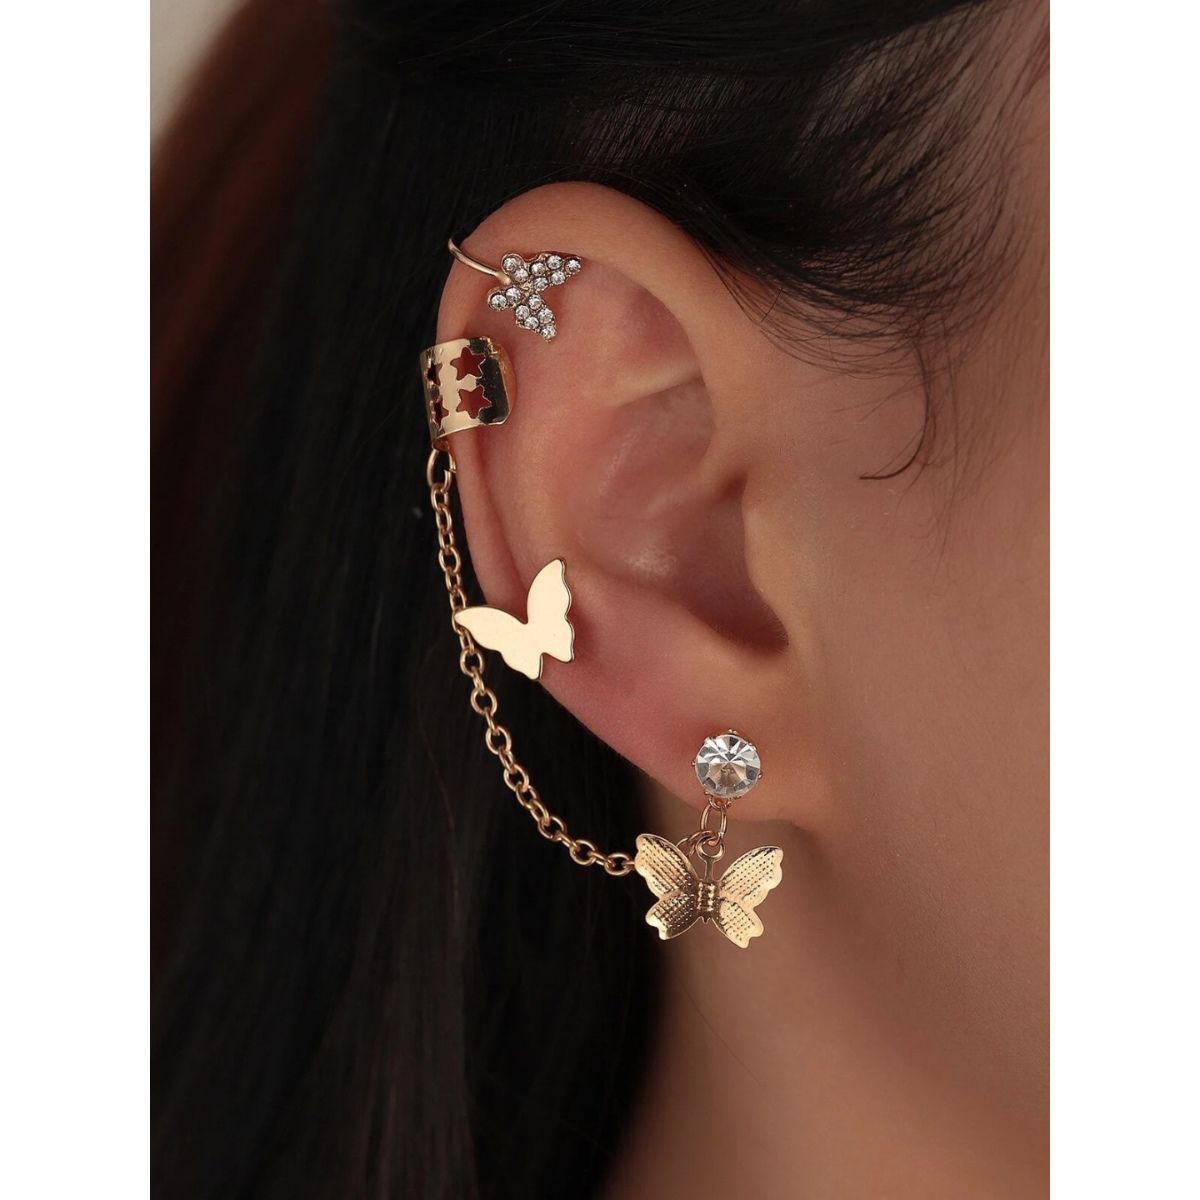 Details 80+ full ear covered earrings online super hot